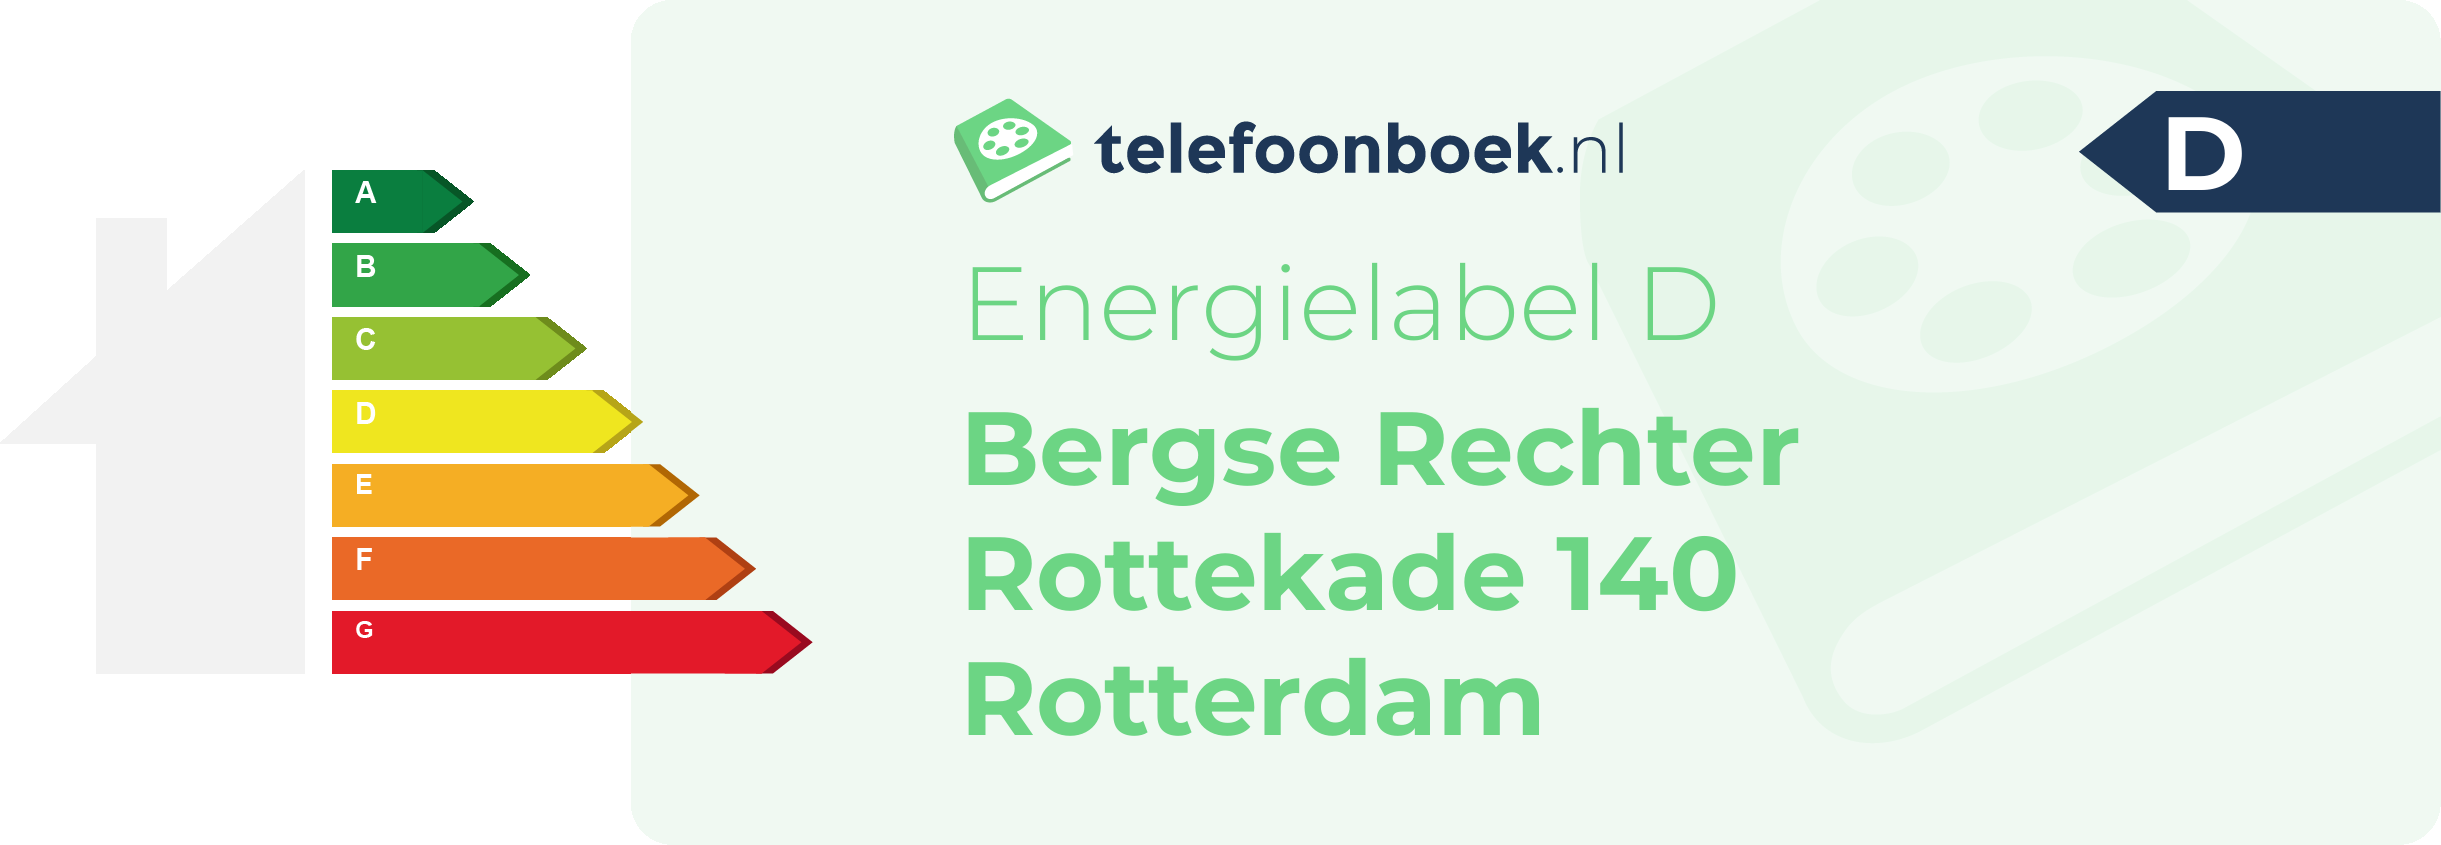 Energielabel Bergse Rechter Rottekade 140 Rotterdam